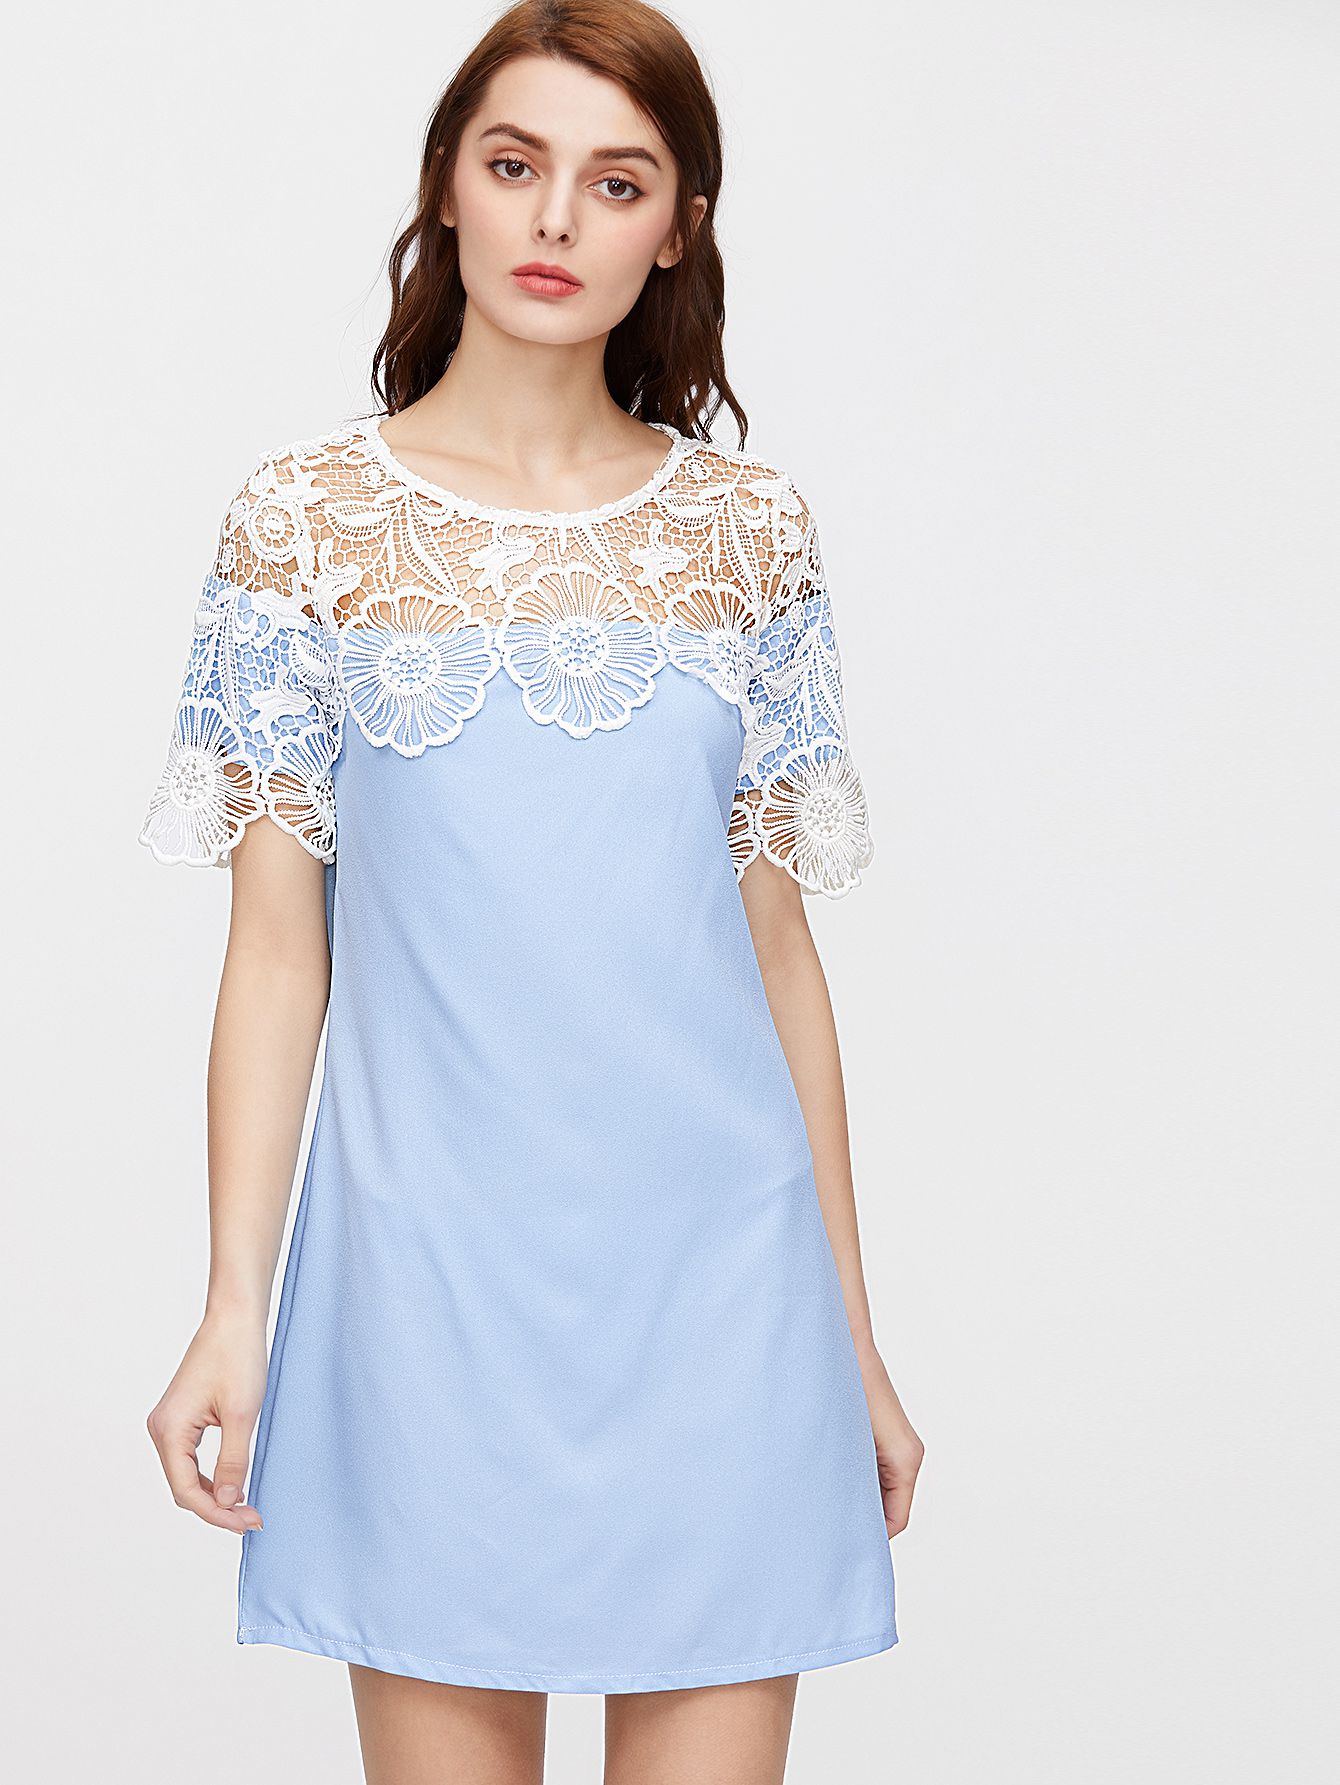 Blue Crochet Lace Trim Shift Dress